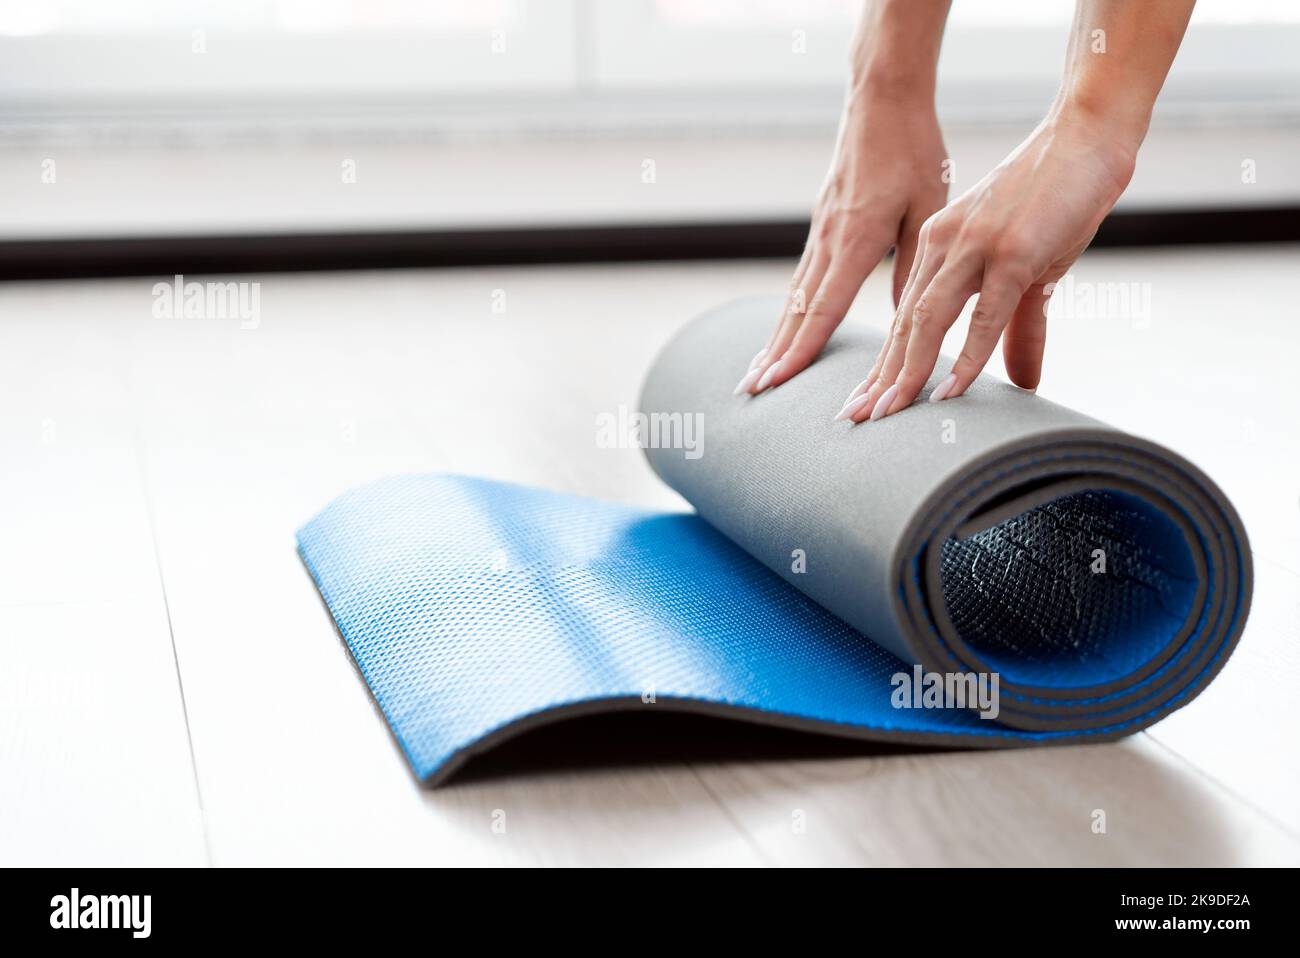 Mujer plegable esterilla de yoga, entrenamiento en casa concepto Foto de stock